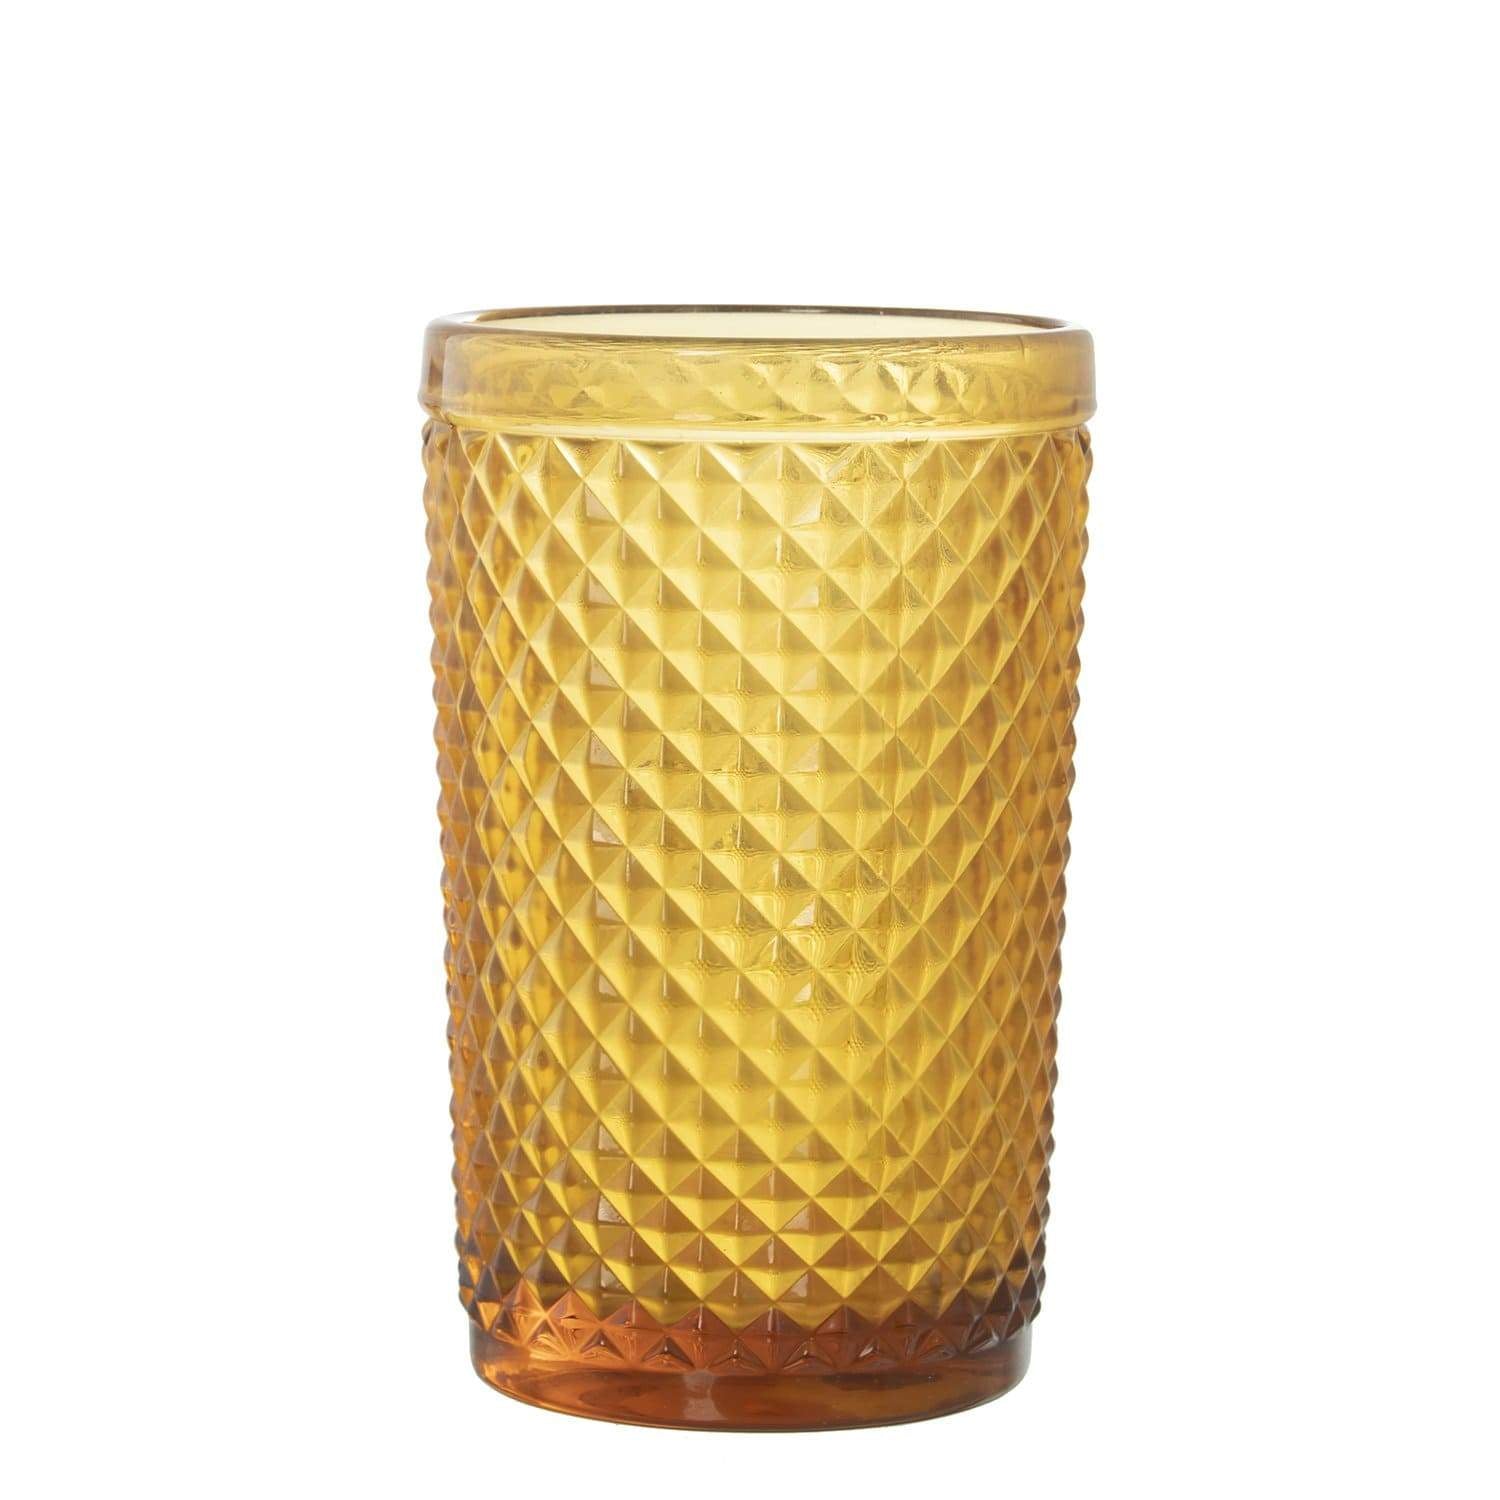 Lisbona set Bicchieri 6pz acqua in vetro colore giallo-senape - Dolci pensieri gift